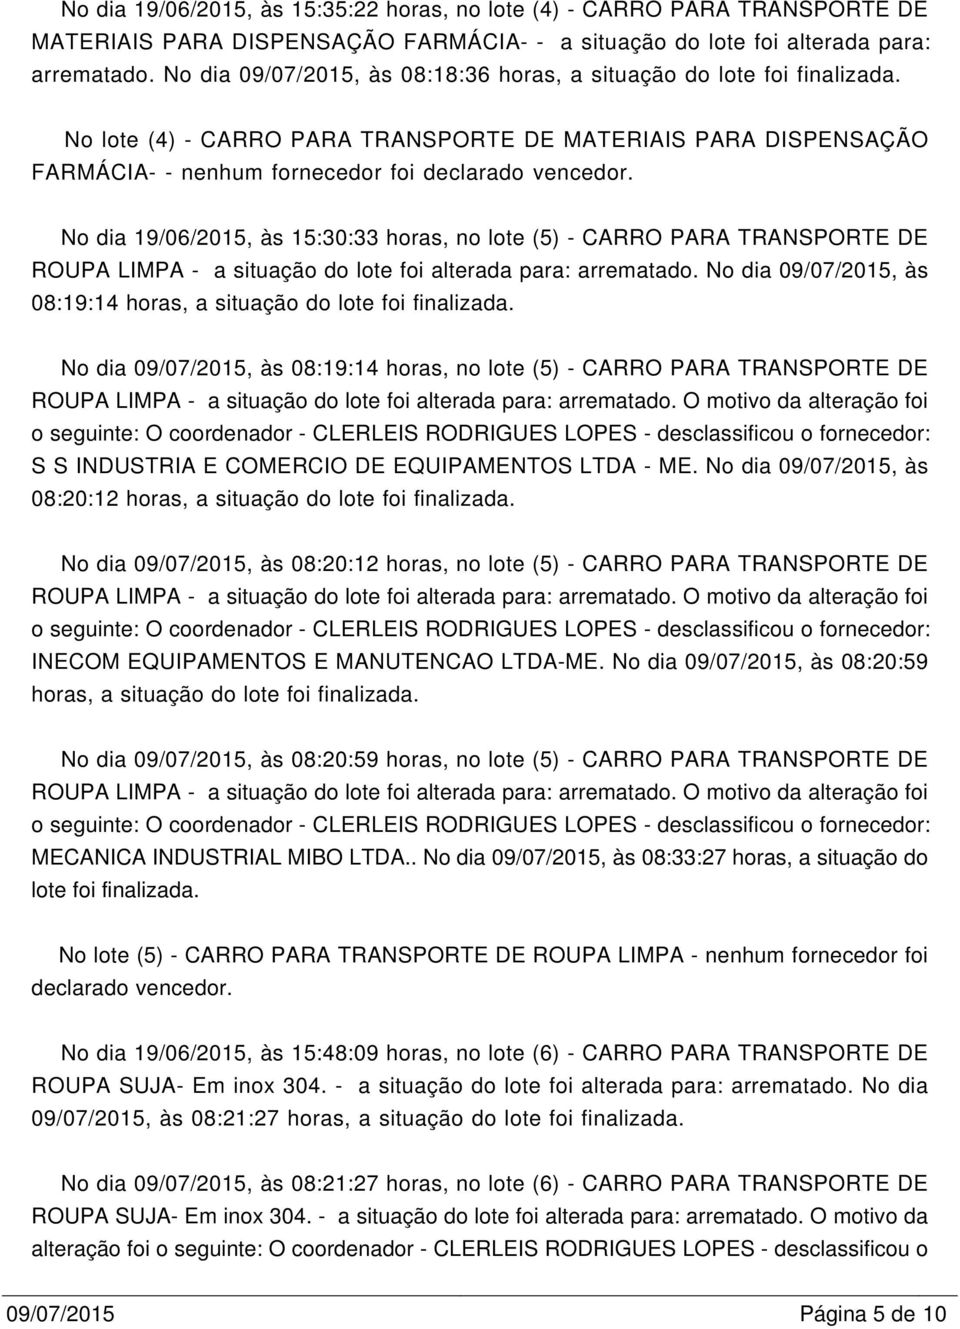 No dia 19/06/2015, às 15:30:33 horas, no lote (5) - CARRO PARA TRANSPORTE DE ROUPA LIMPA - a situação do lote foi alterada para: arrematado.